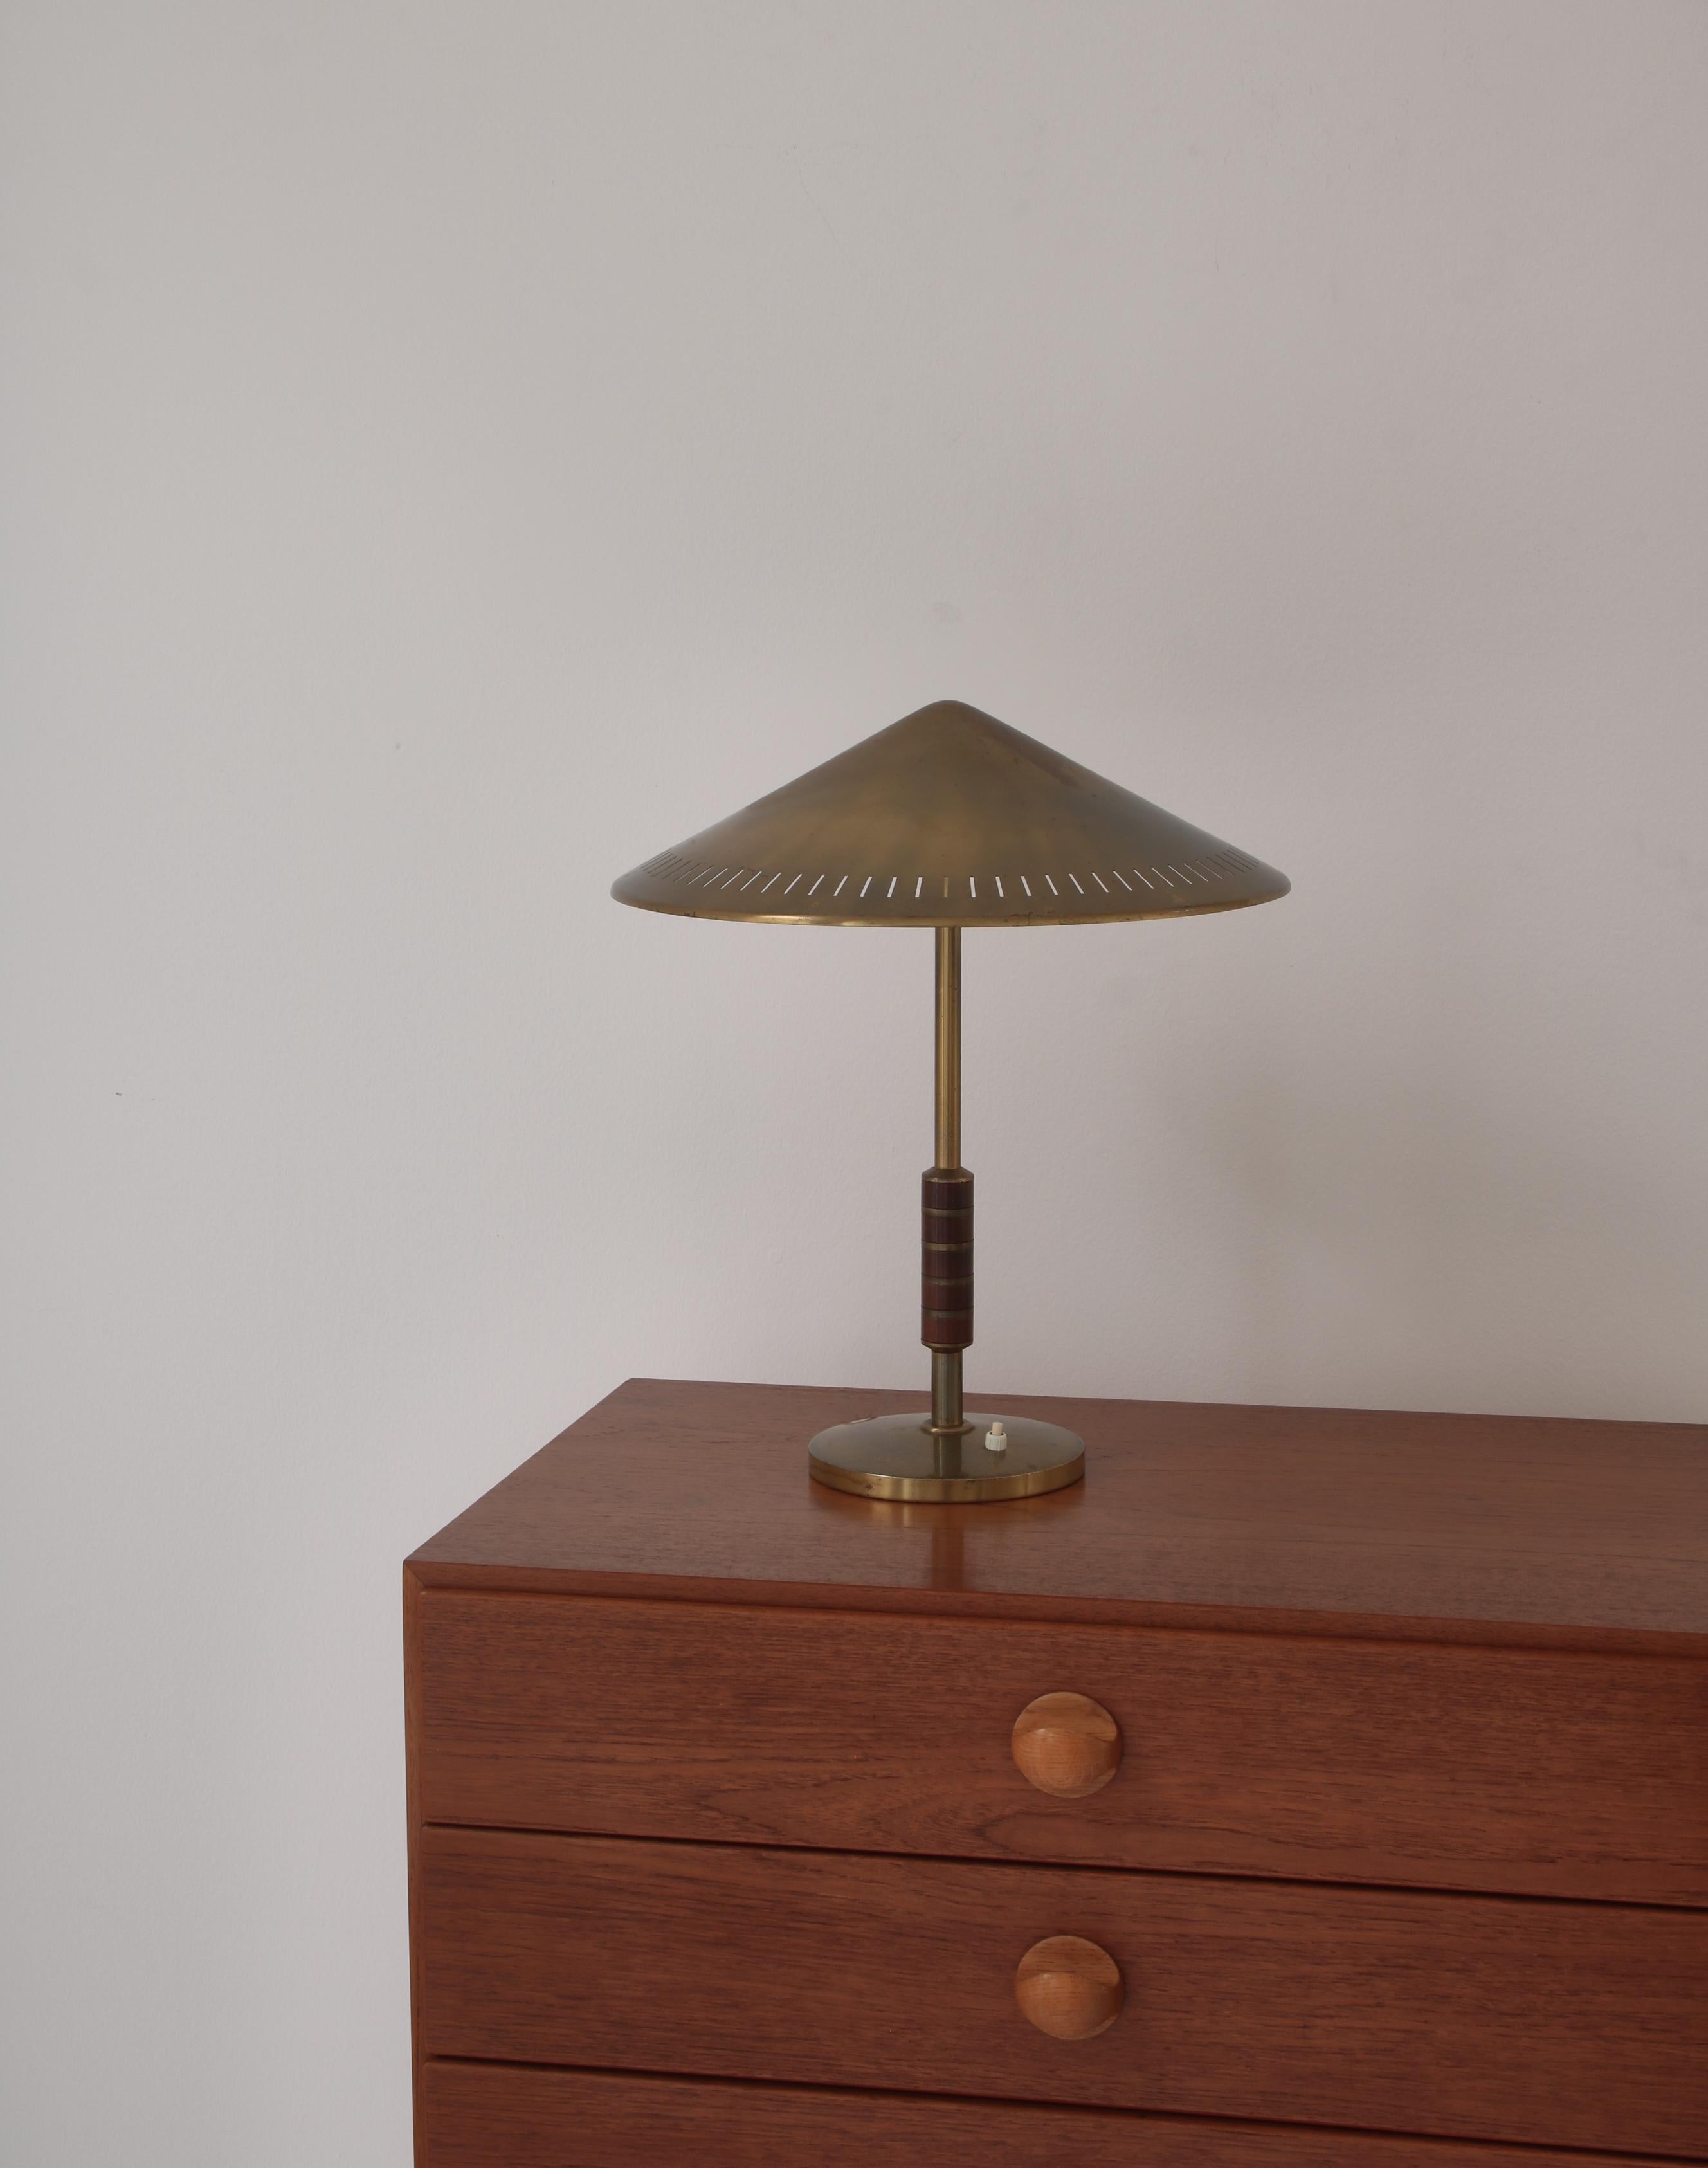 Seltene und schöne dänische moderne Tischlampe aus massivem Messing mit Mahagonigriff. Hergestellt von LYFA, Kopenhagen in den 1950er Jahren und entworfen vom dänischen Designer Bent Karlby. Die Lampe hat zwei Lichtquellen.